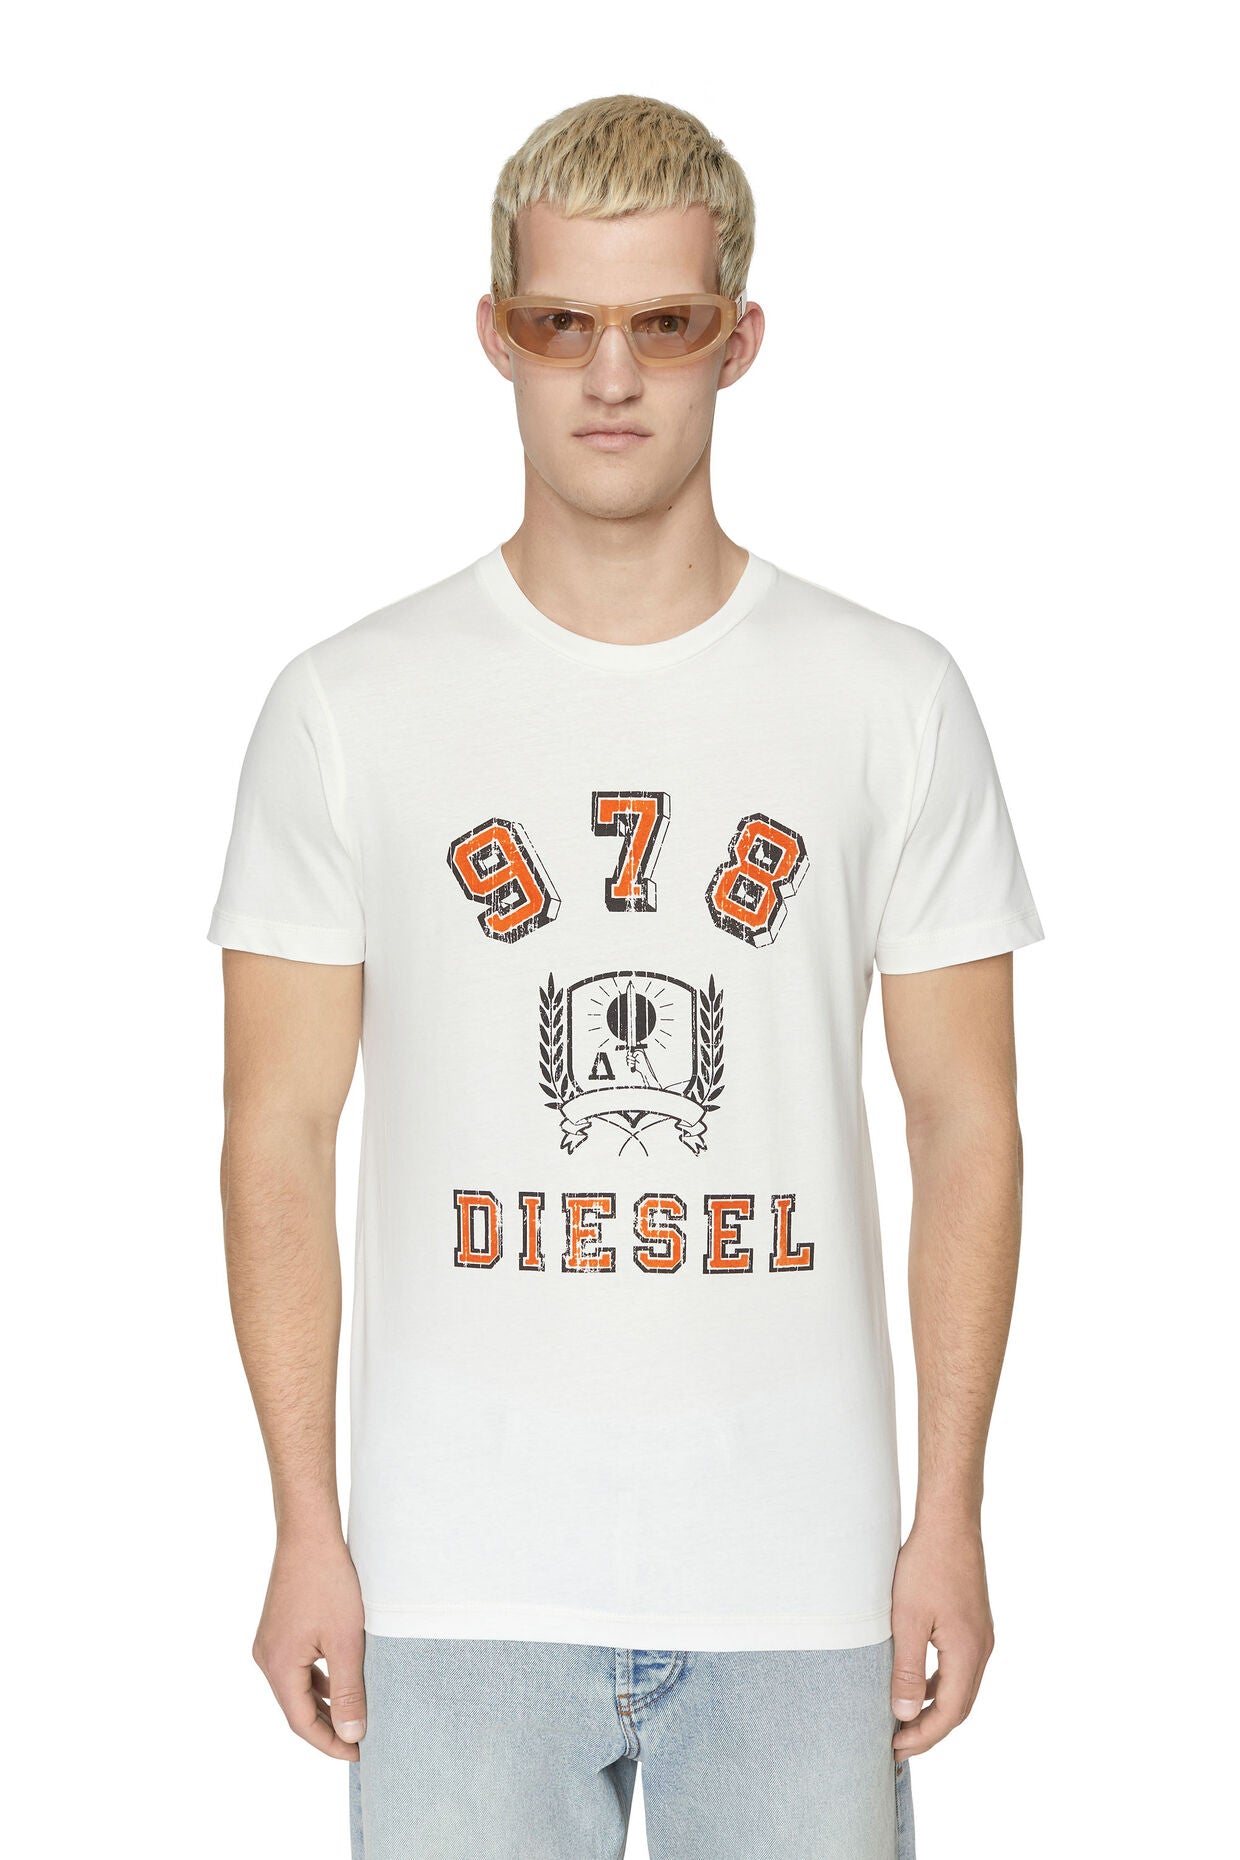 Diesel - Diegor Tee - White/Orange